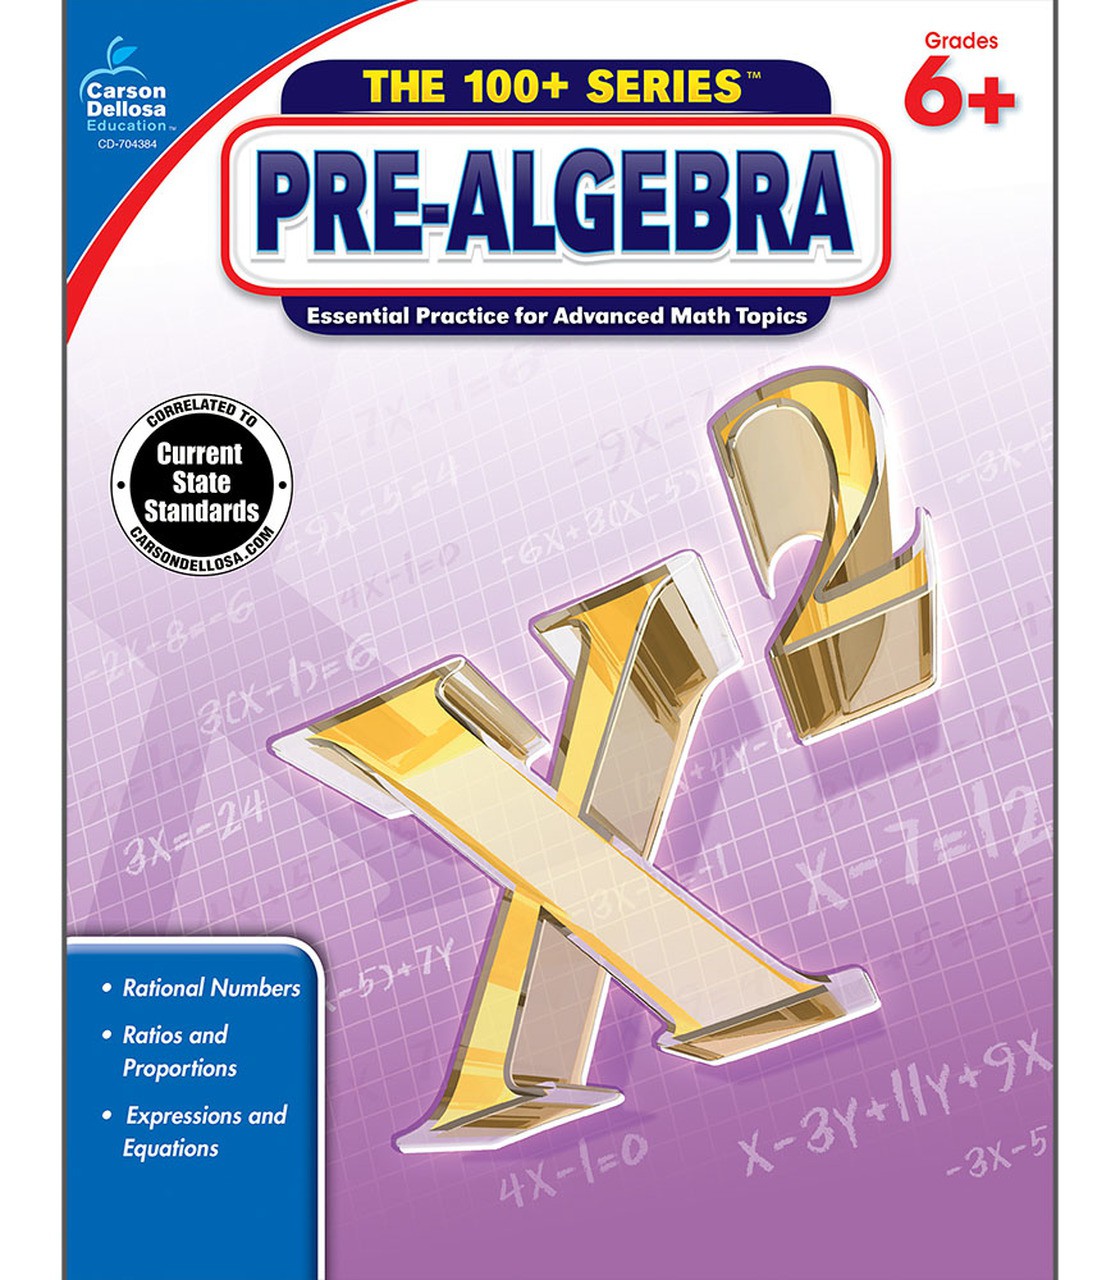 Pre-Algebra Common Core ED. 6+